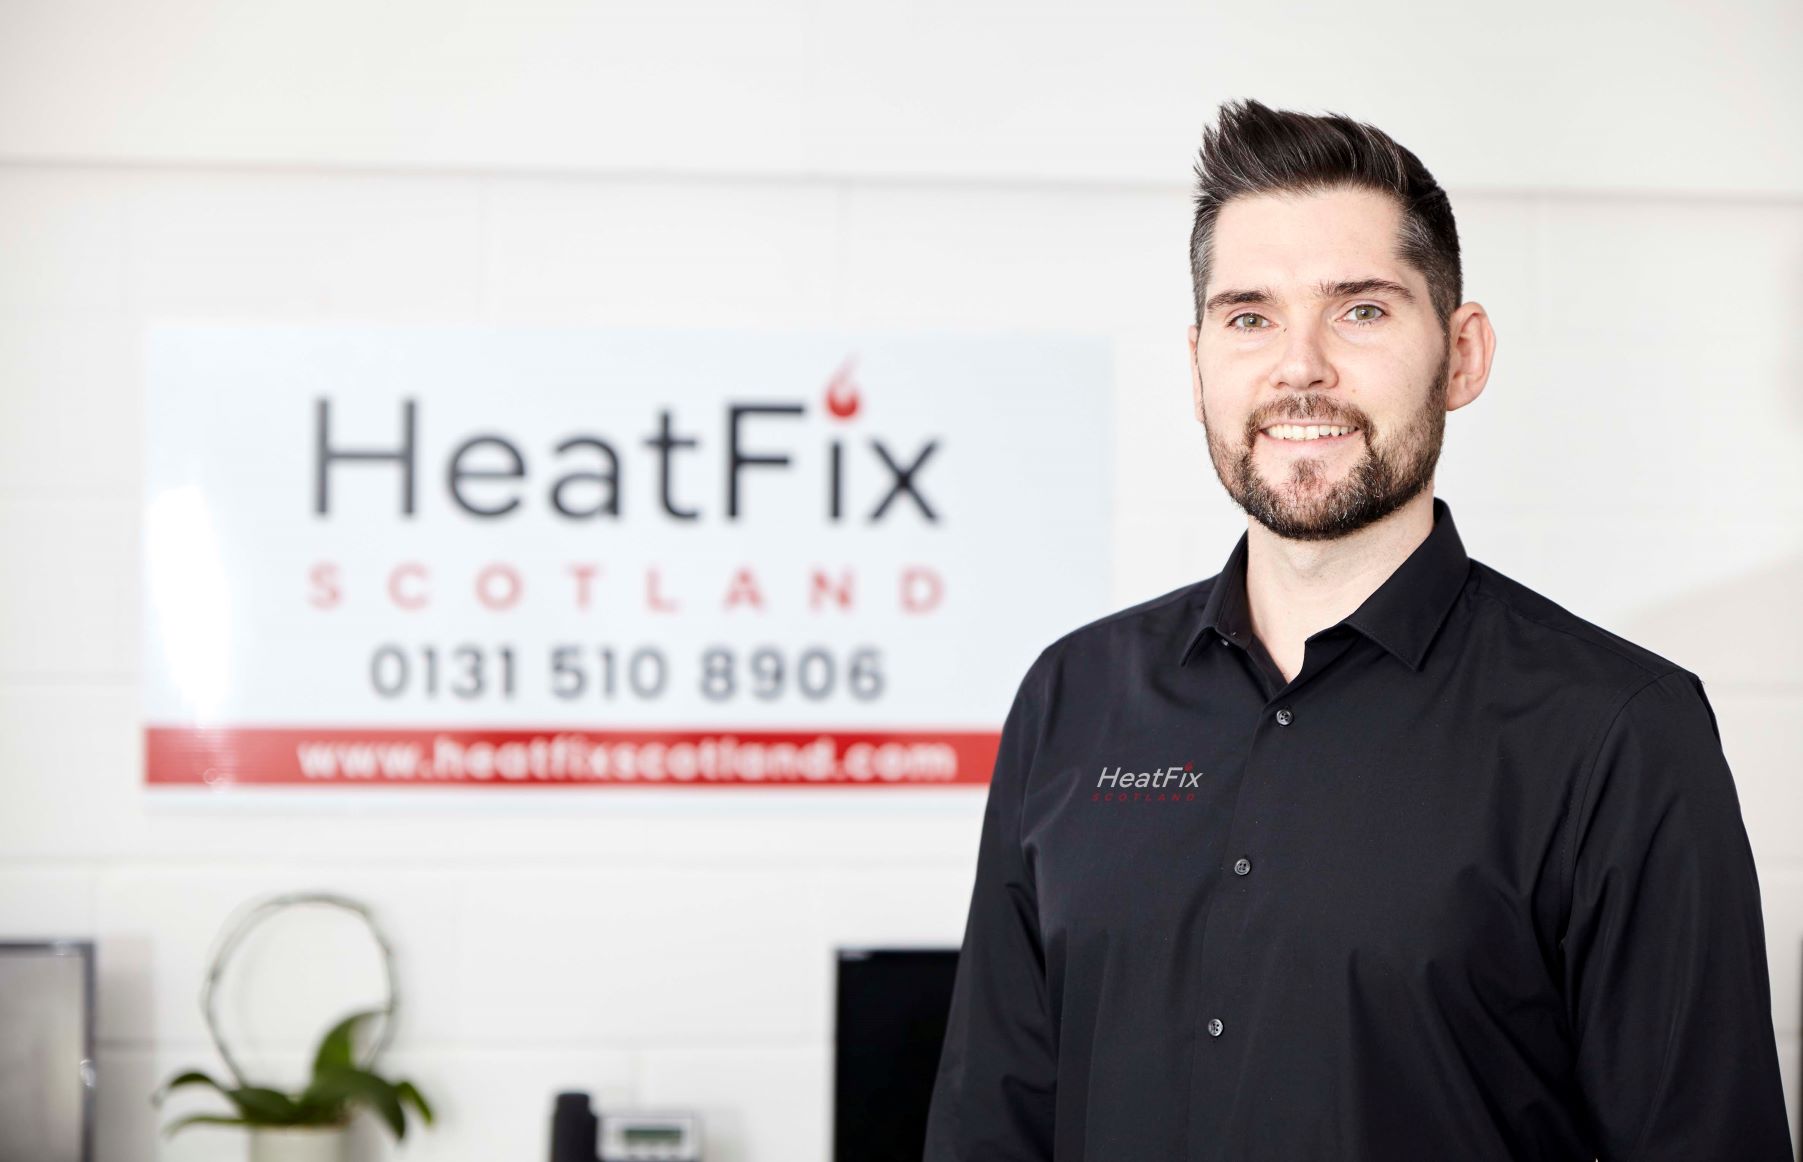 Greenshoots: HeatFix Scotland targets rapid growth after launch